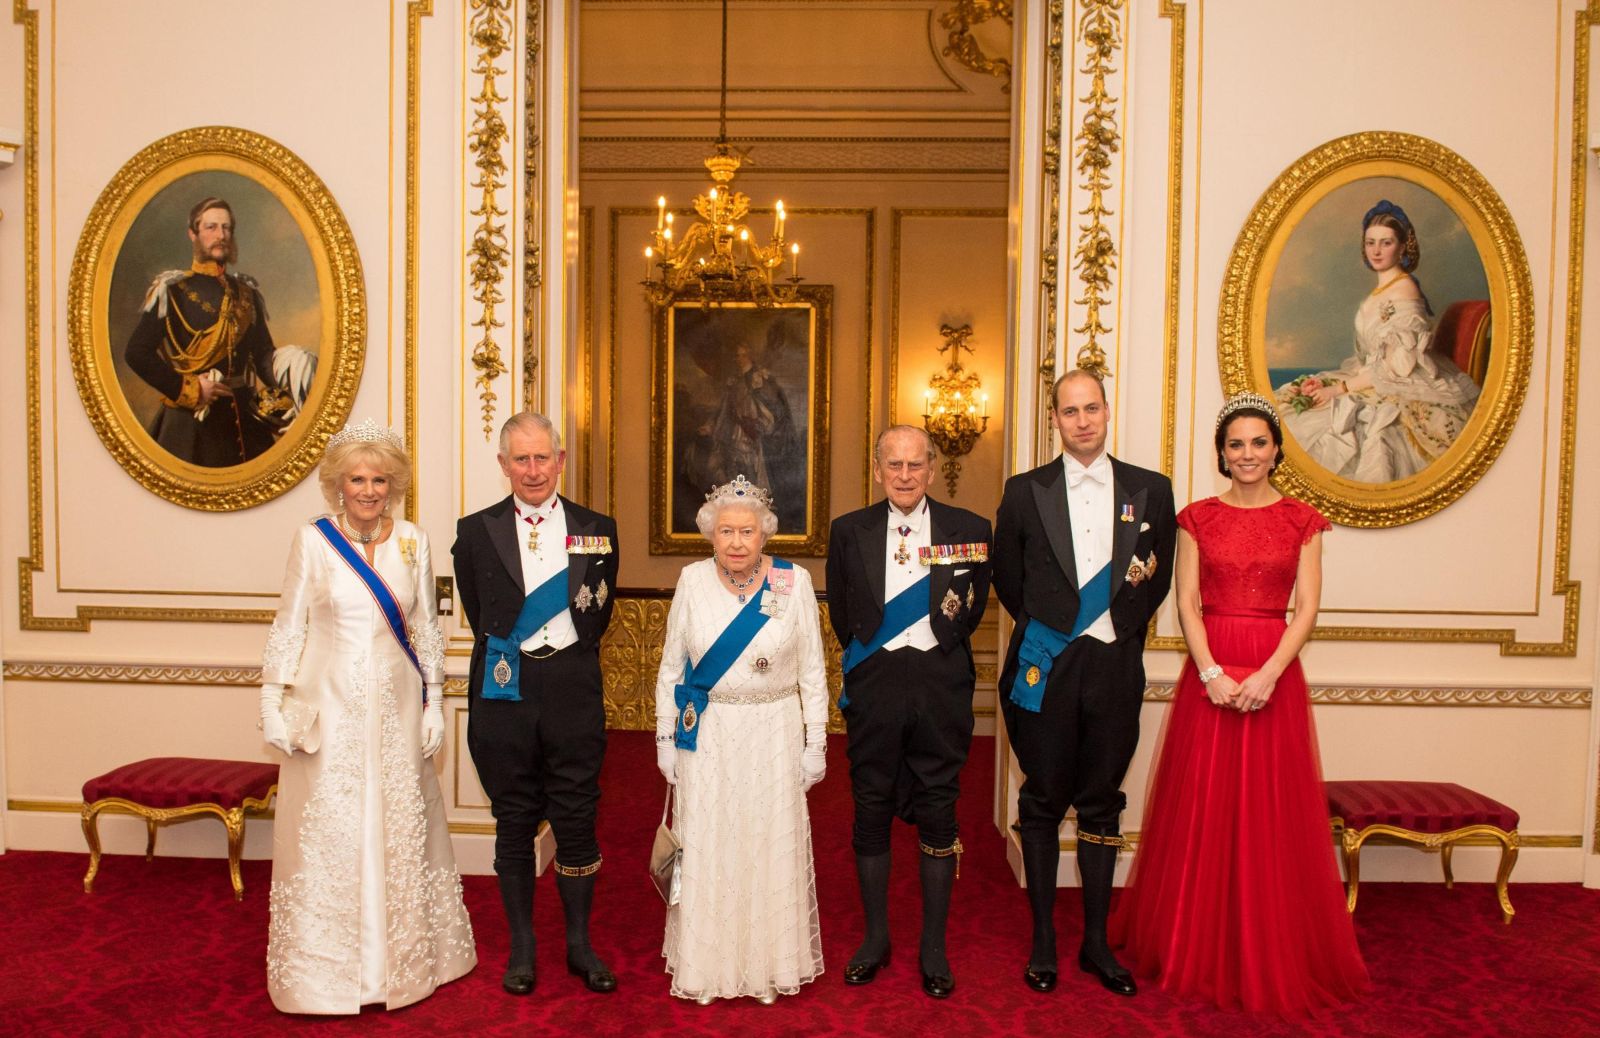 Protocollo Reale: le (incredibili) regole della Royal Family inglese